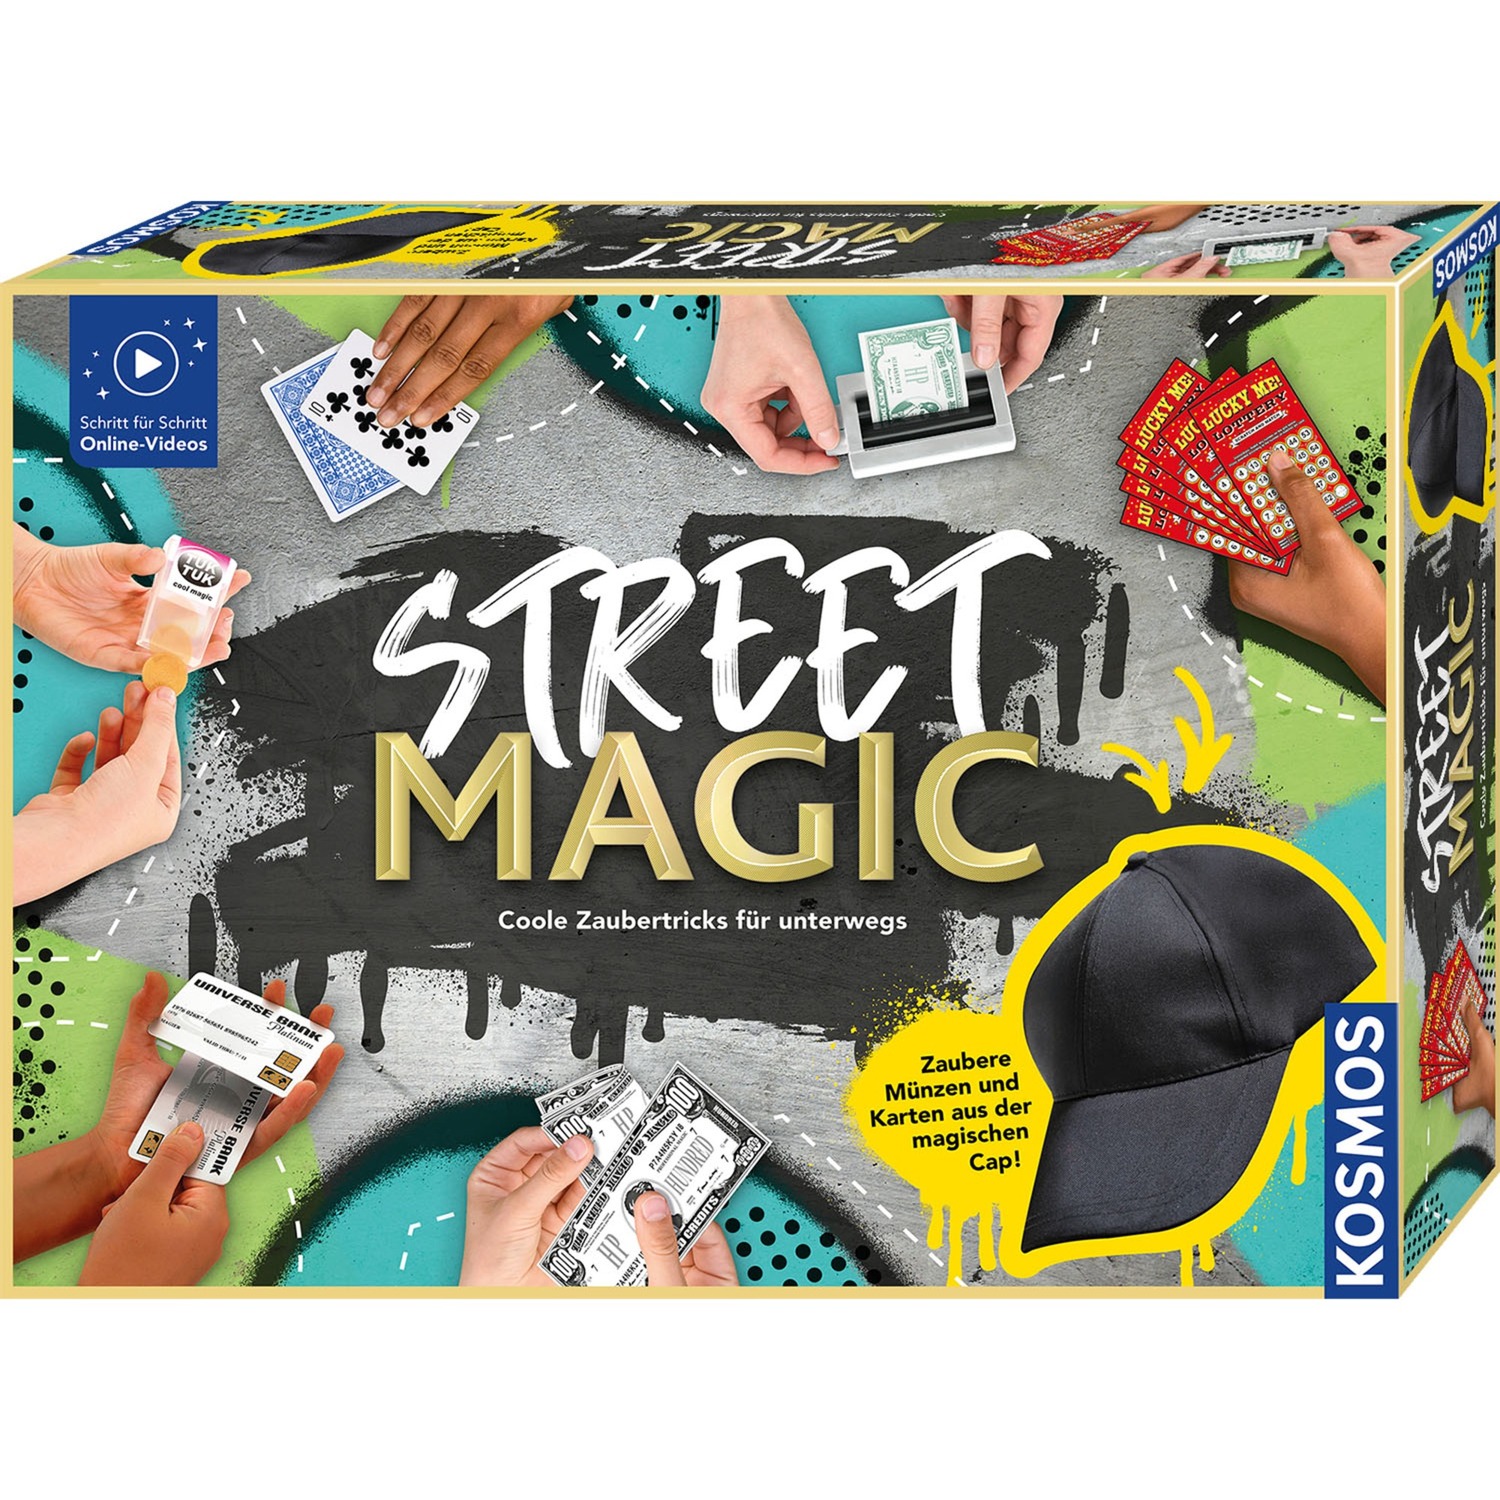 Image of Alternate - Street Magic, Zauberkasten online einkaufen bei Alternate